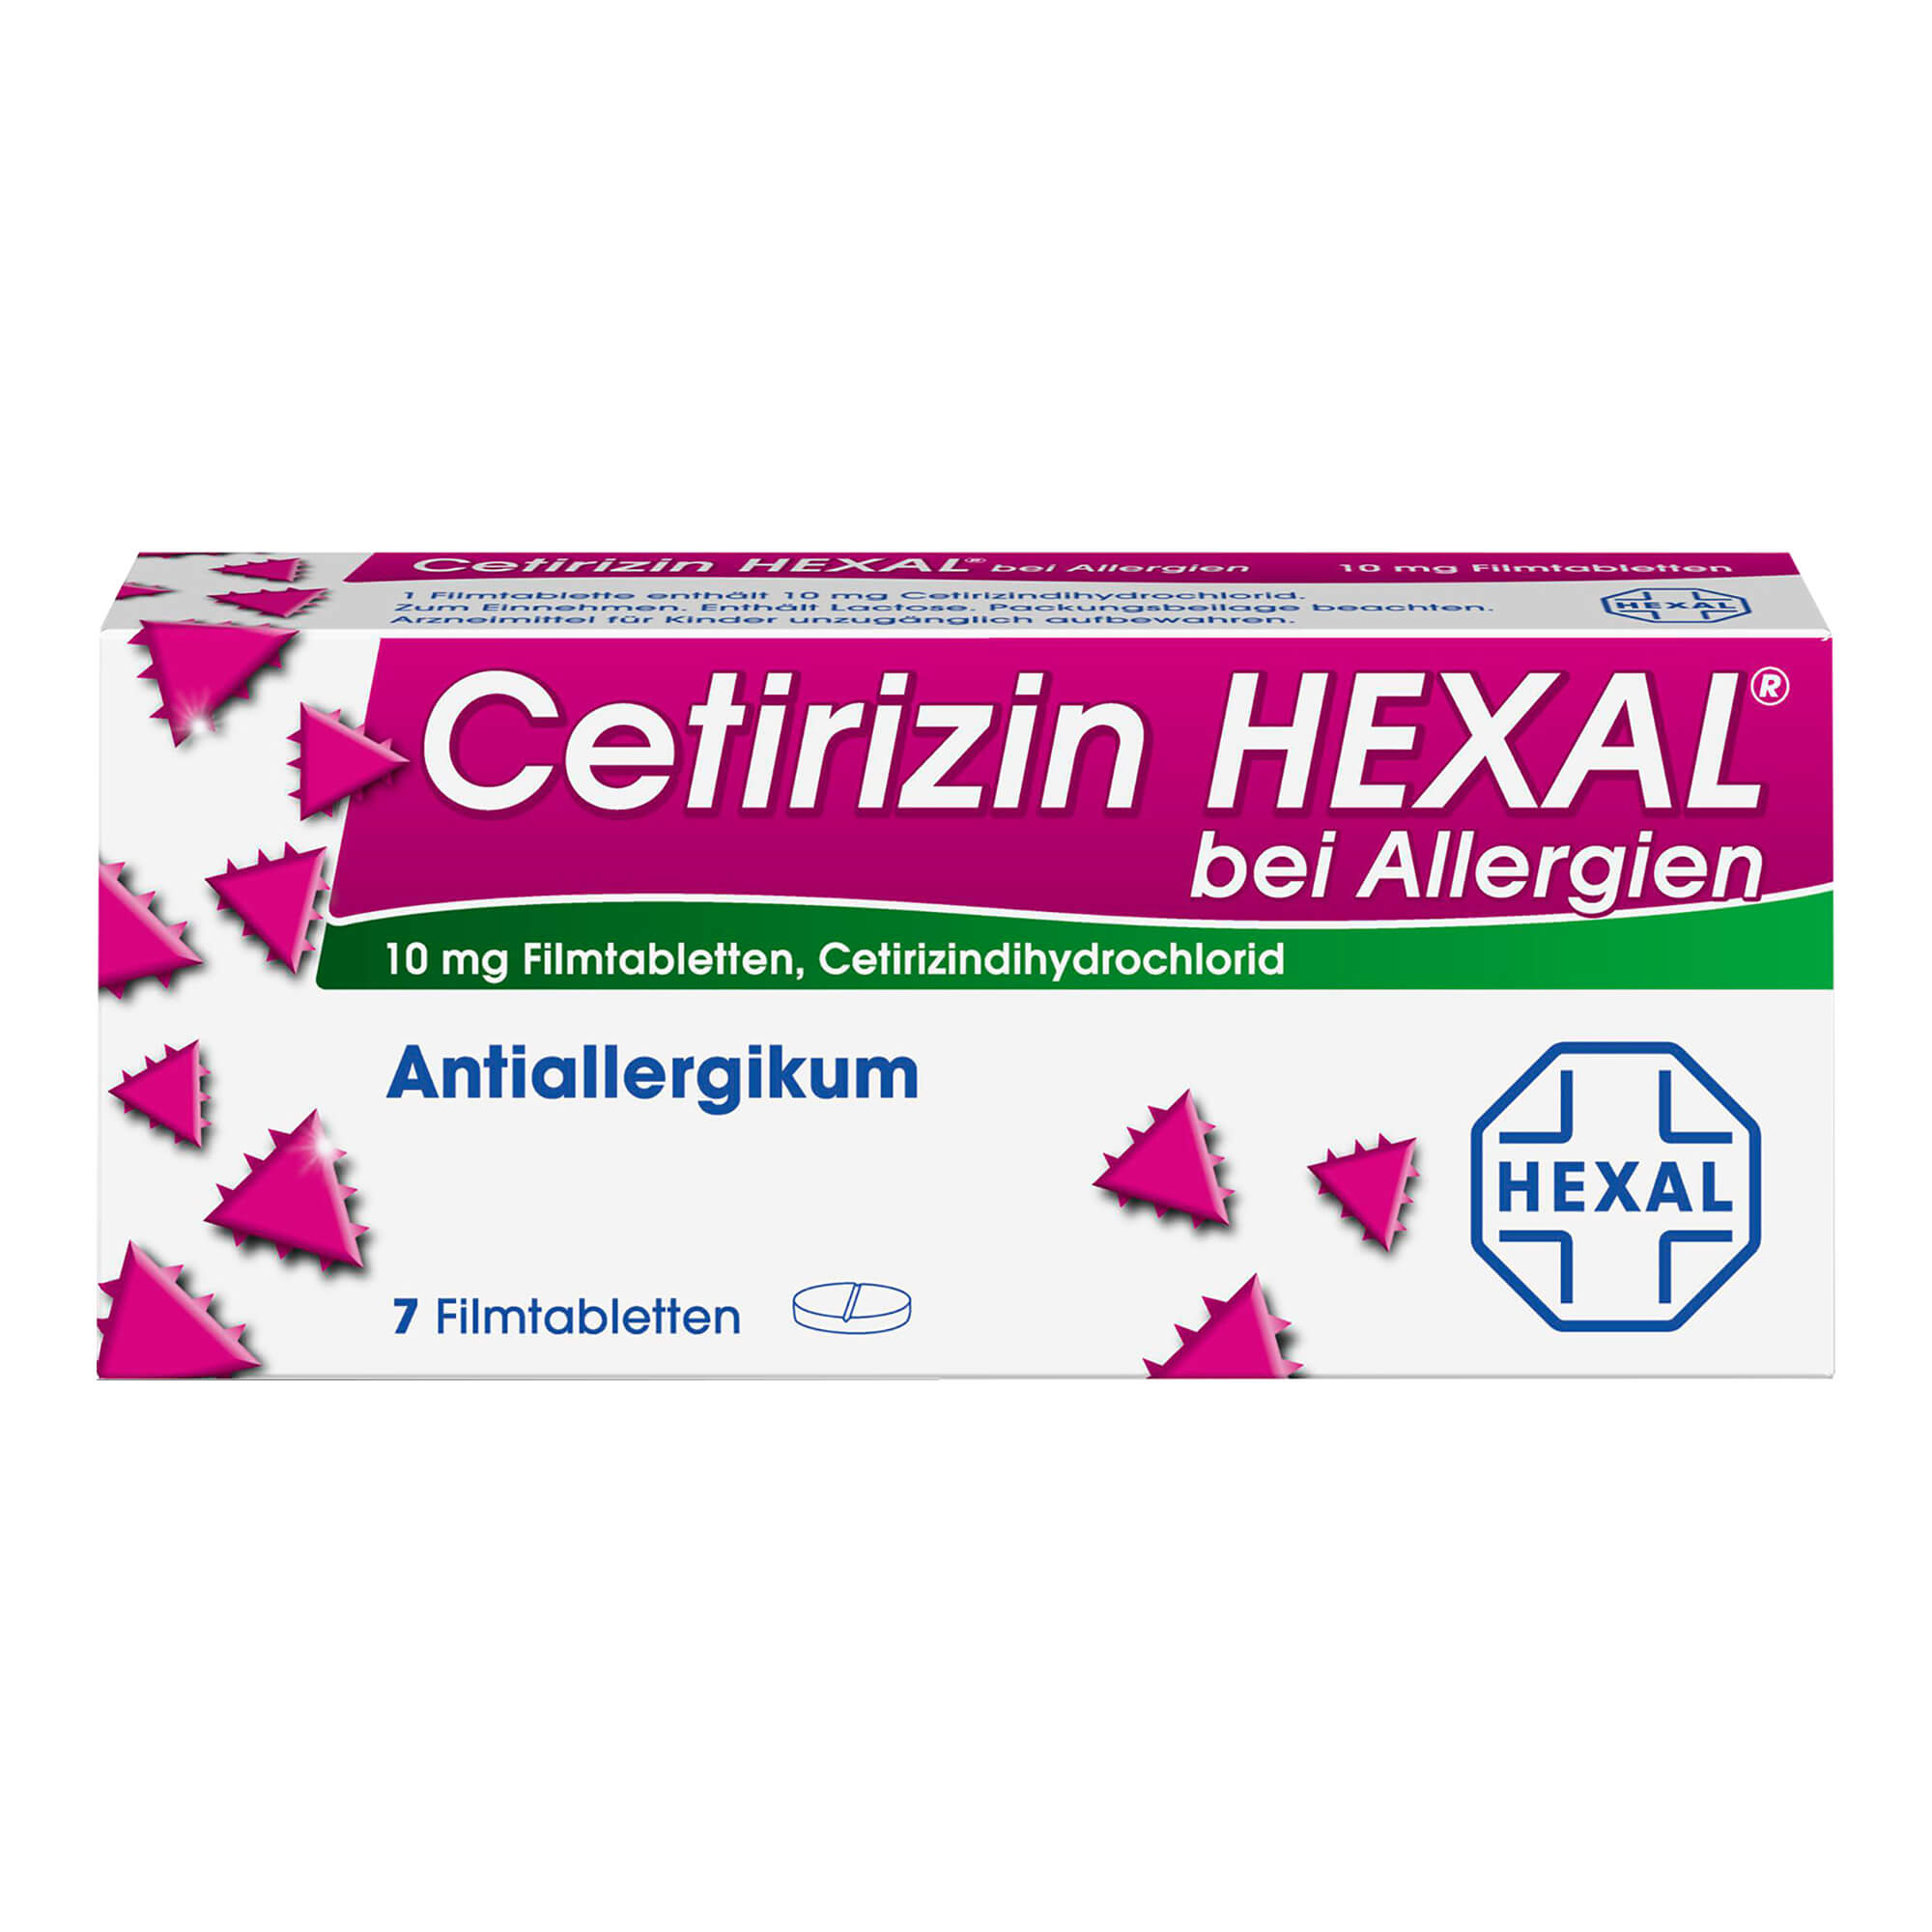 Antiallergikum ab 6 Jahren. Lindert schnell und effektiv allergische Symptome bei Urtikaria oder allergischer Rhinitis.